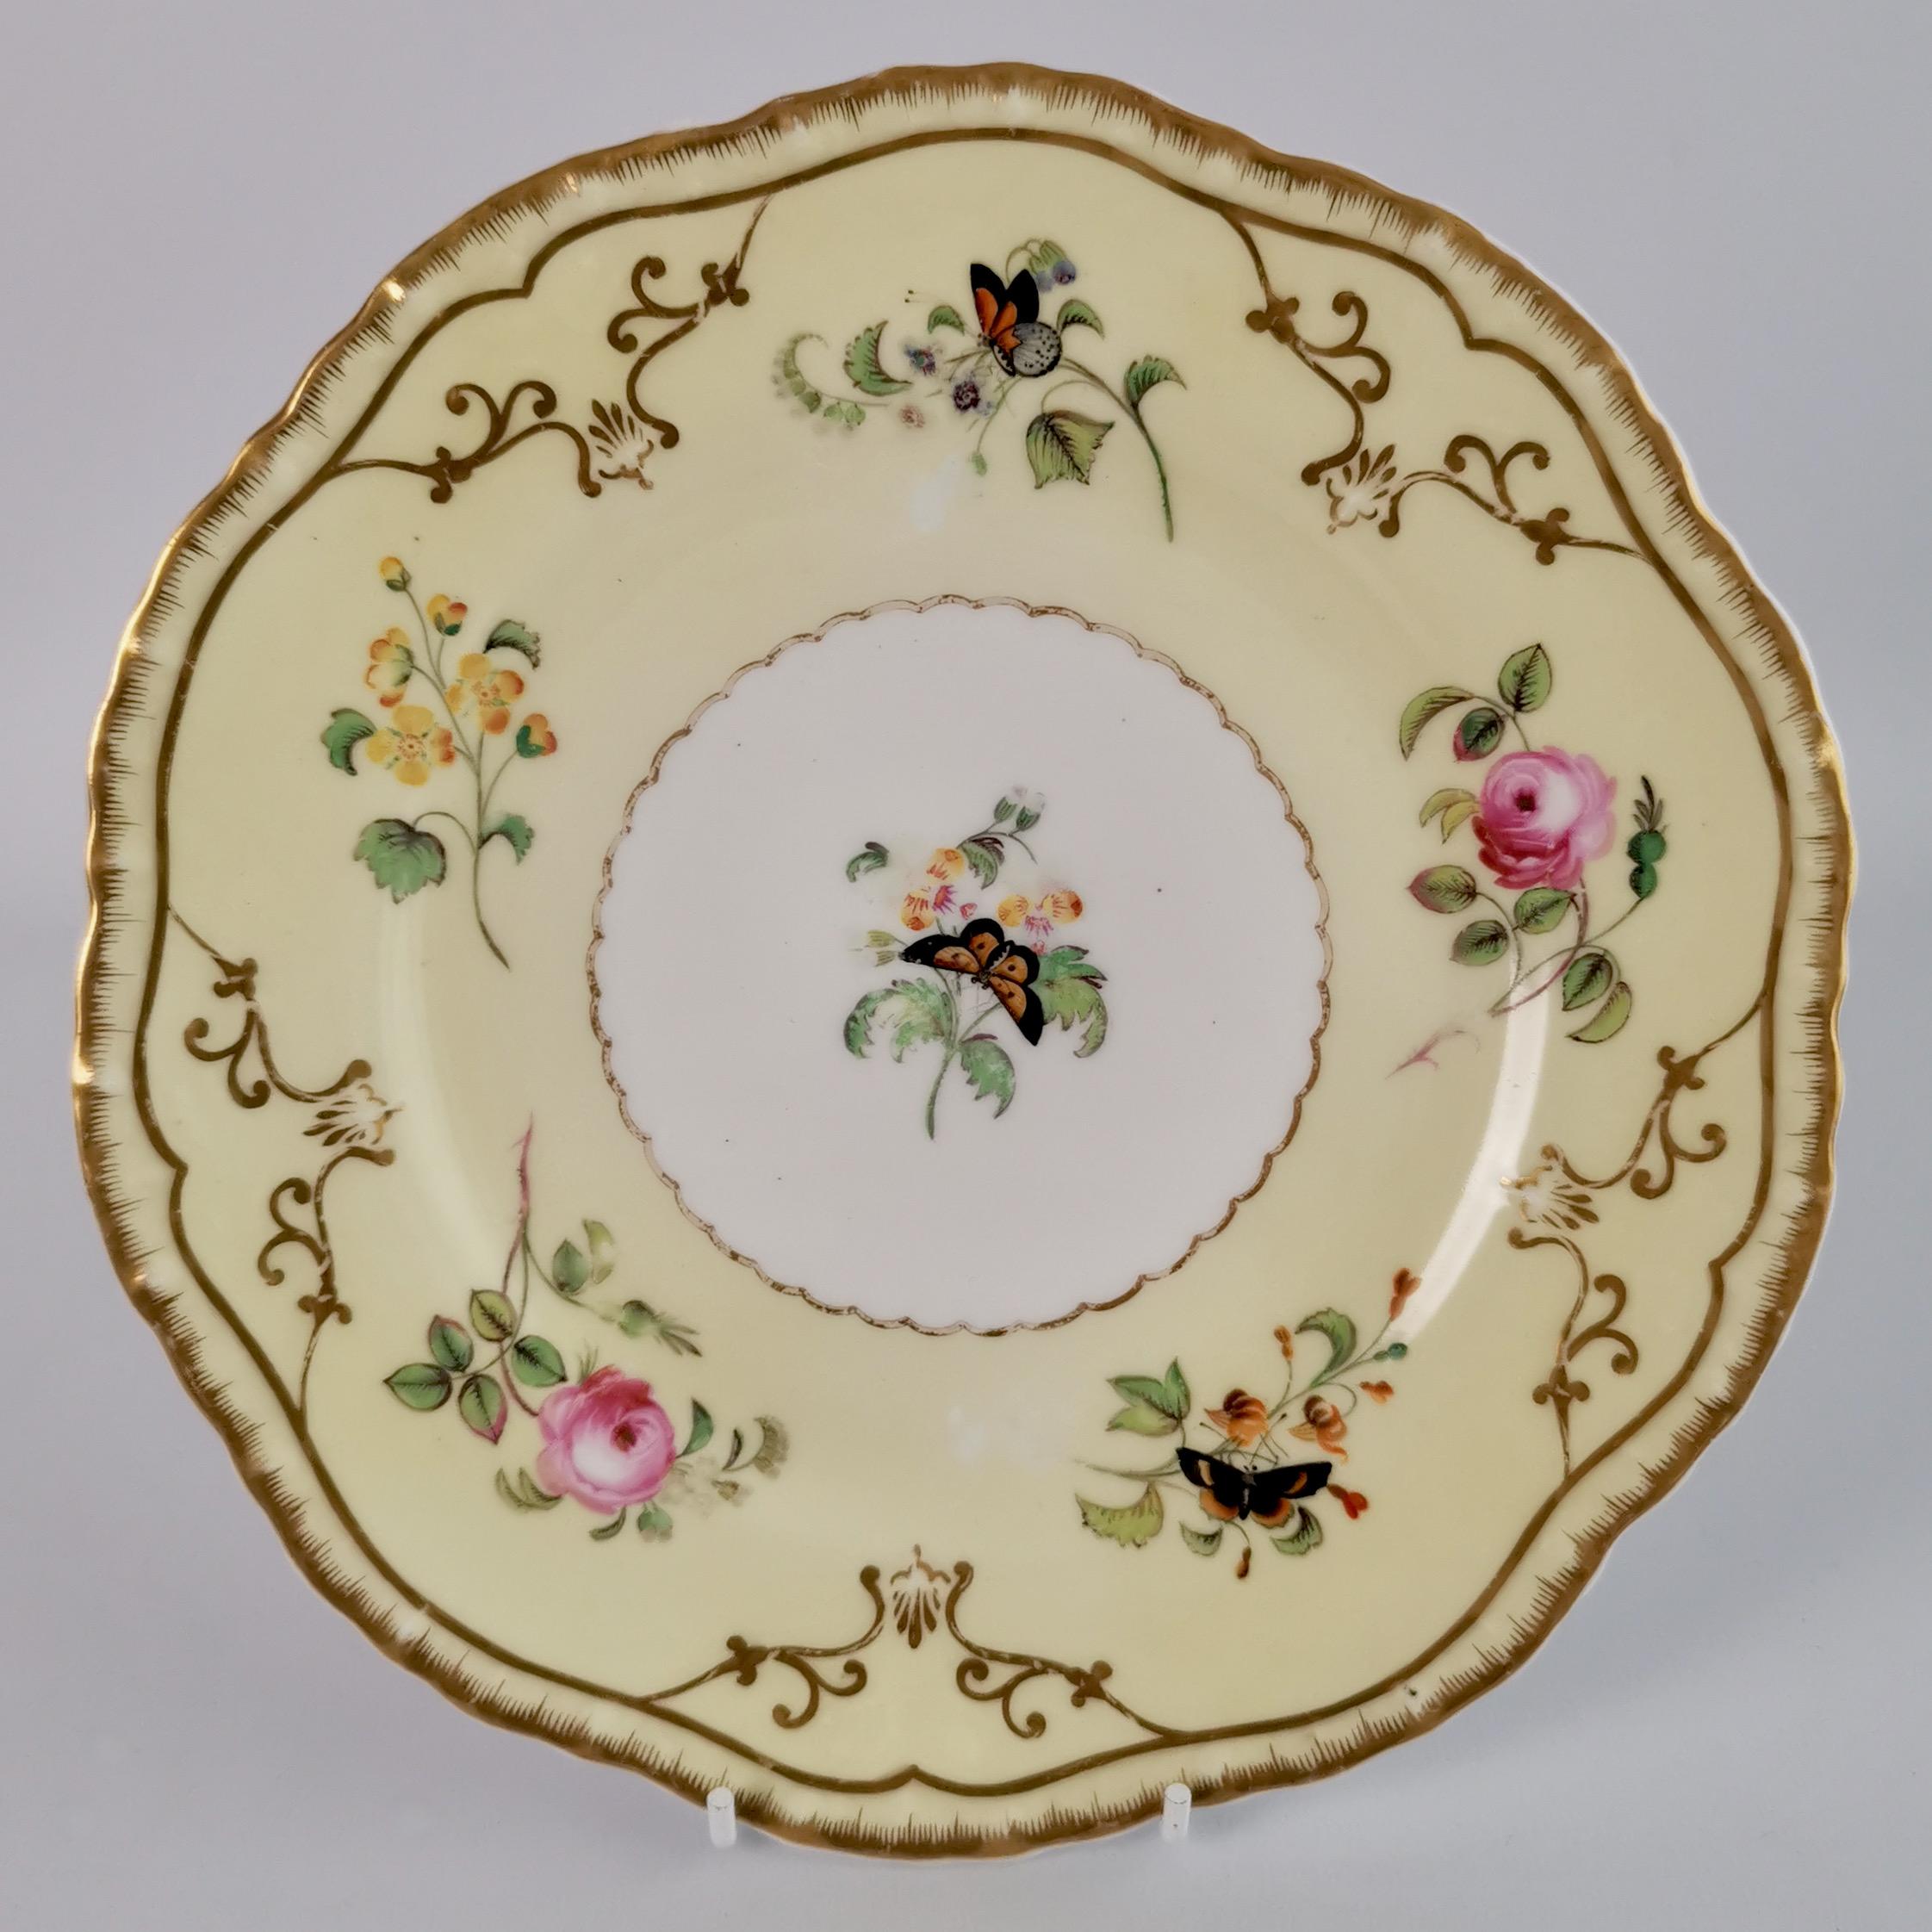 Mid-19th Century Copeland & Garrett Porcelain Dessert Set, Yellow with Butterflies, 1833-1847